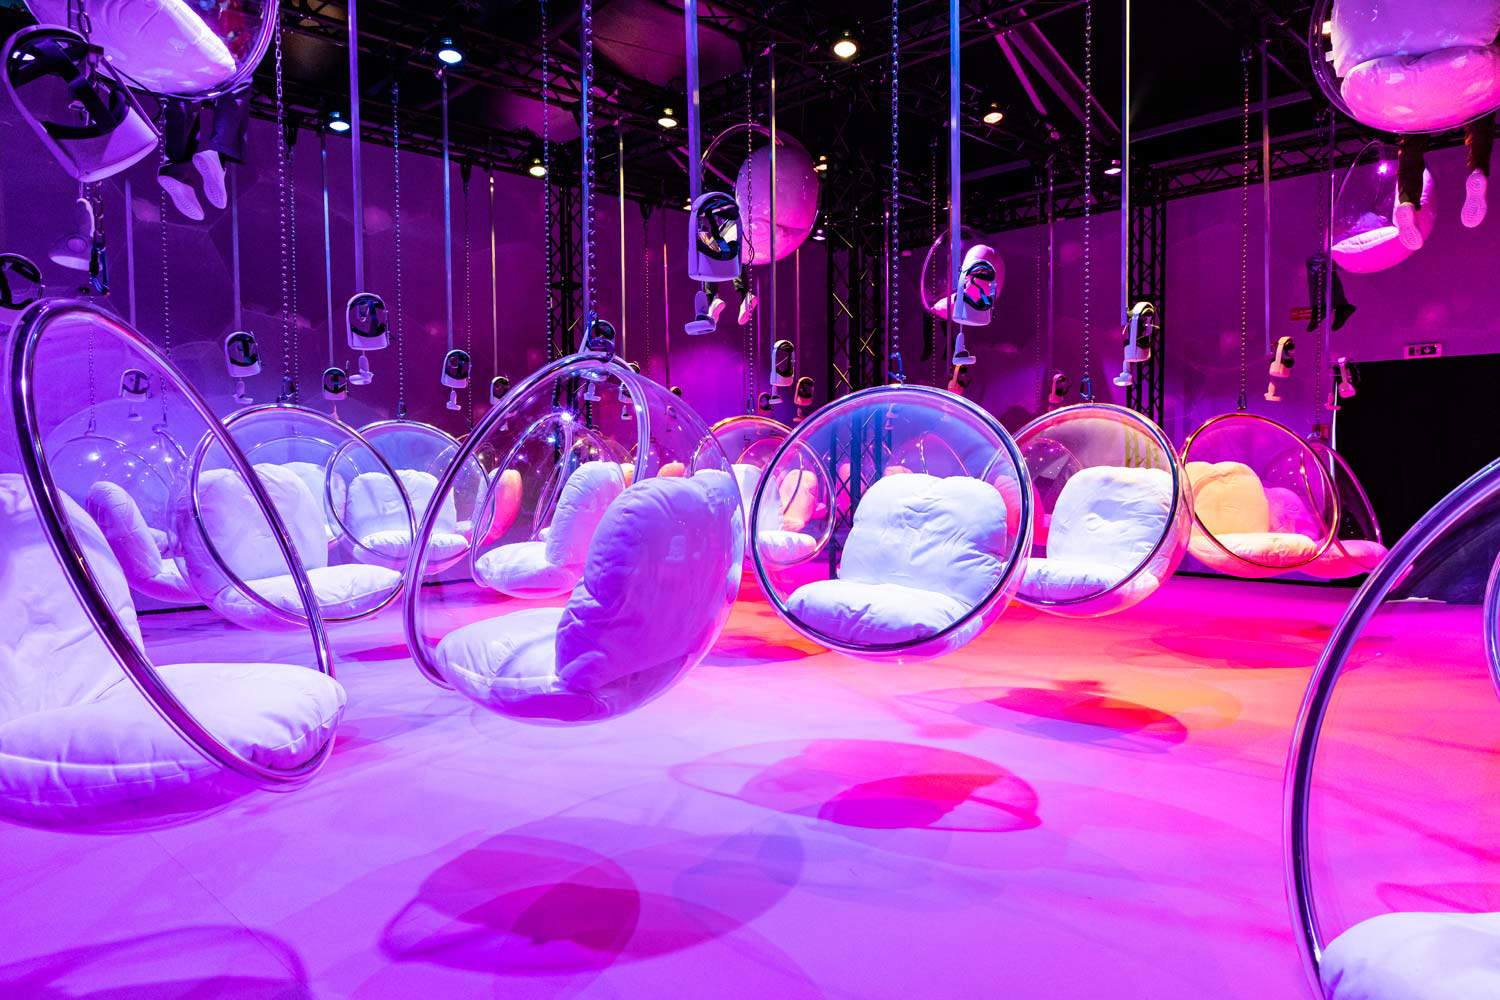 A Milano arriva la bubble experience: un'esperienza immersiva tutta a tema bolle